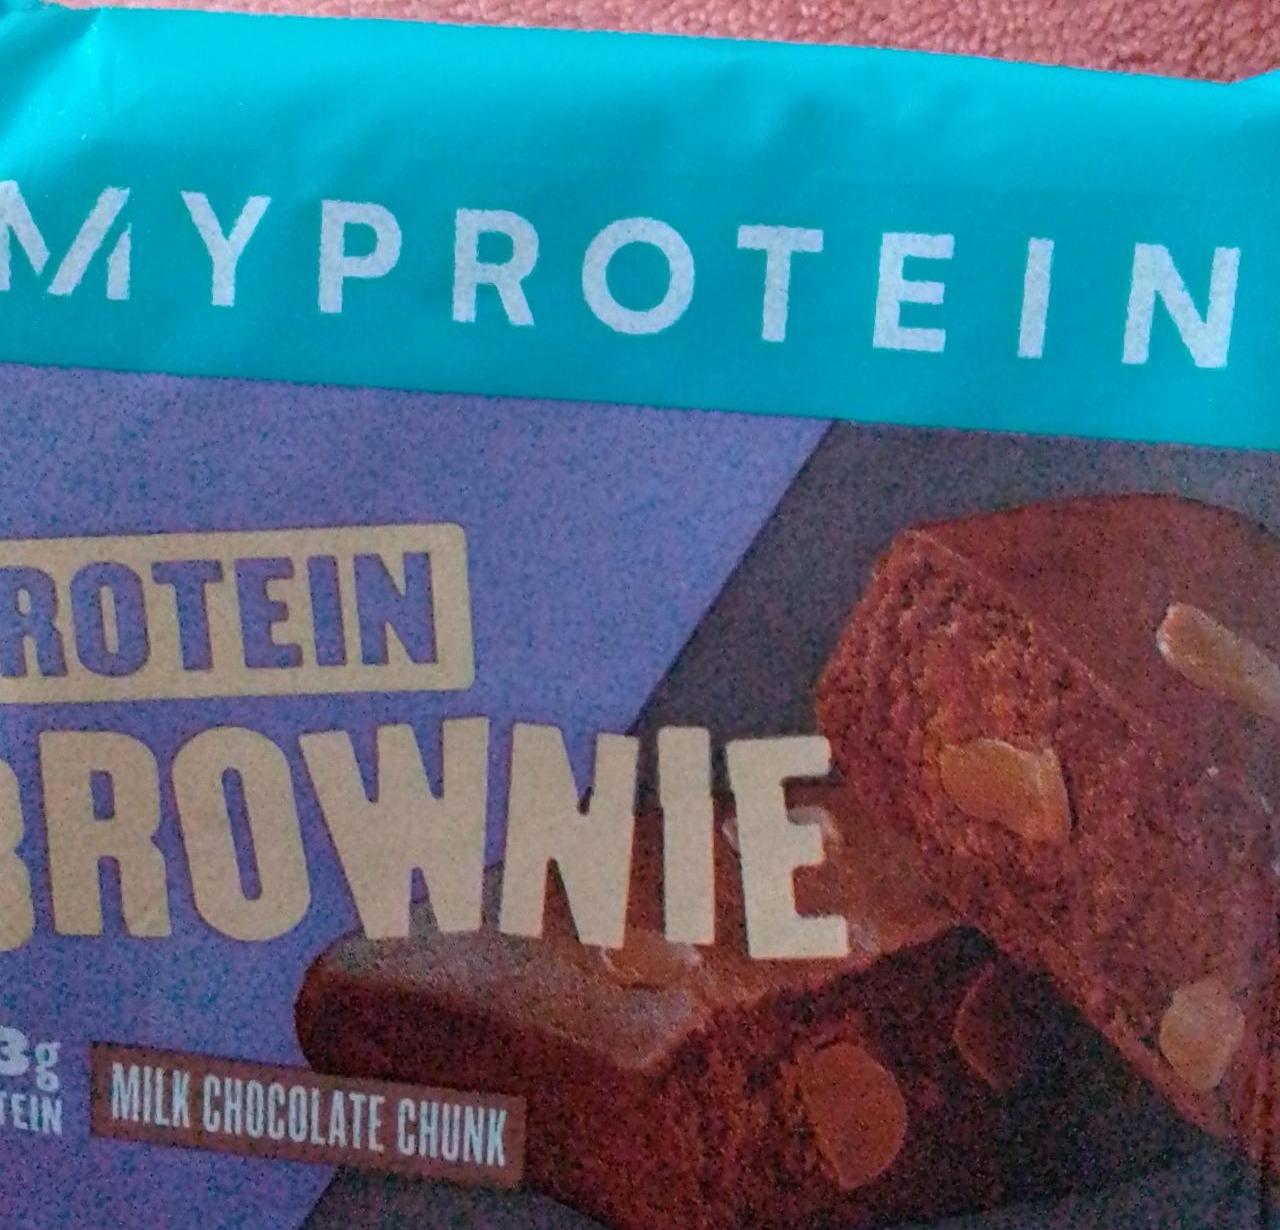 Fotografie - Protein Brownie Milk Chocolate Chunk MyProtein